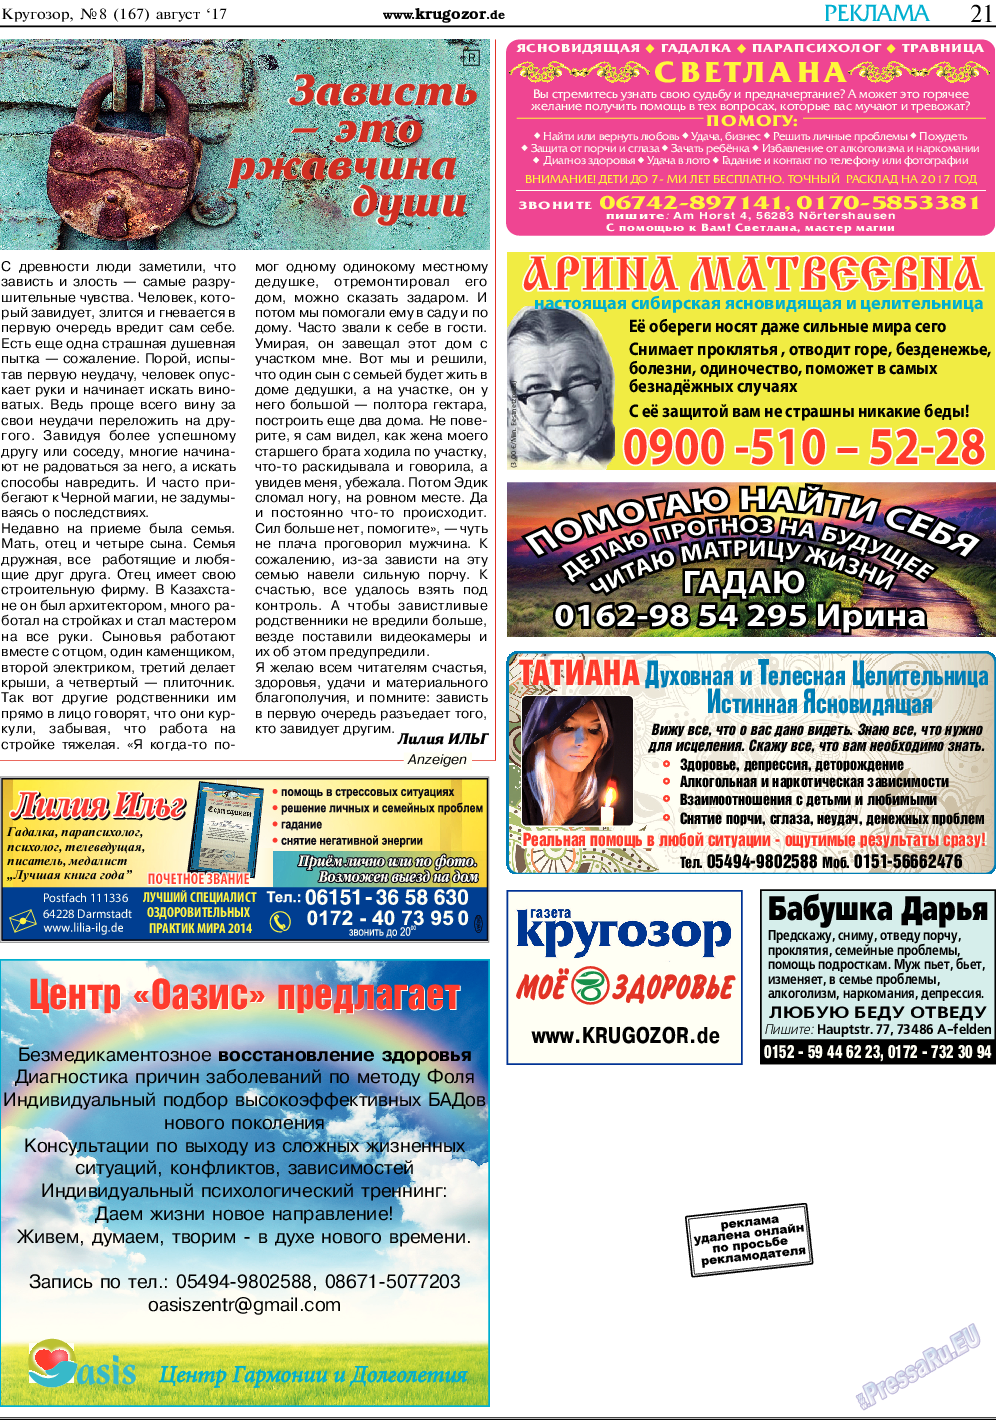 Кругозор, газета. 2017 №8 стр.21